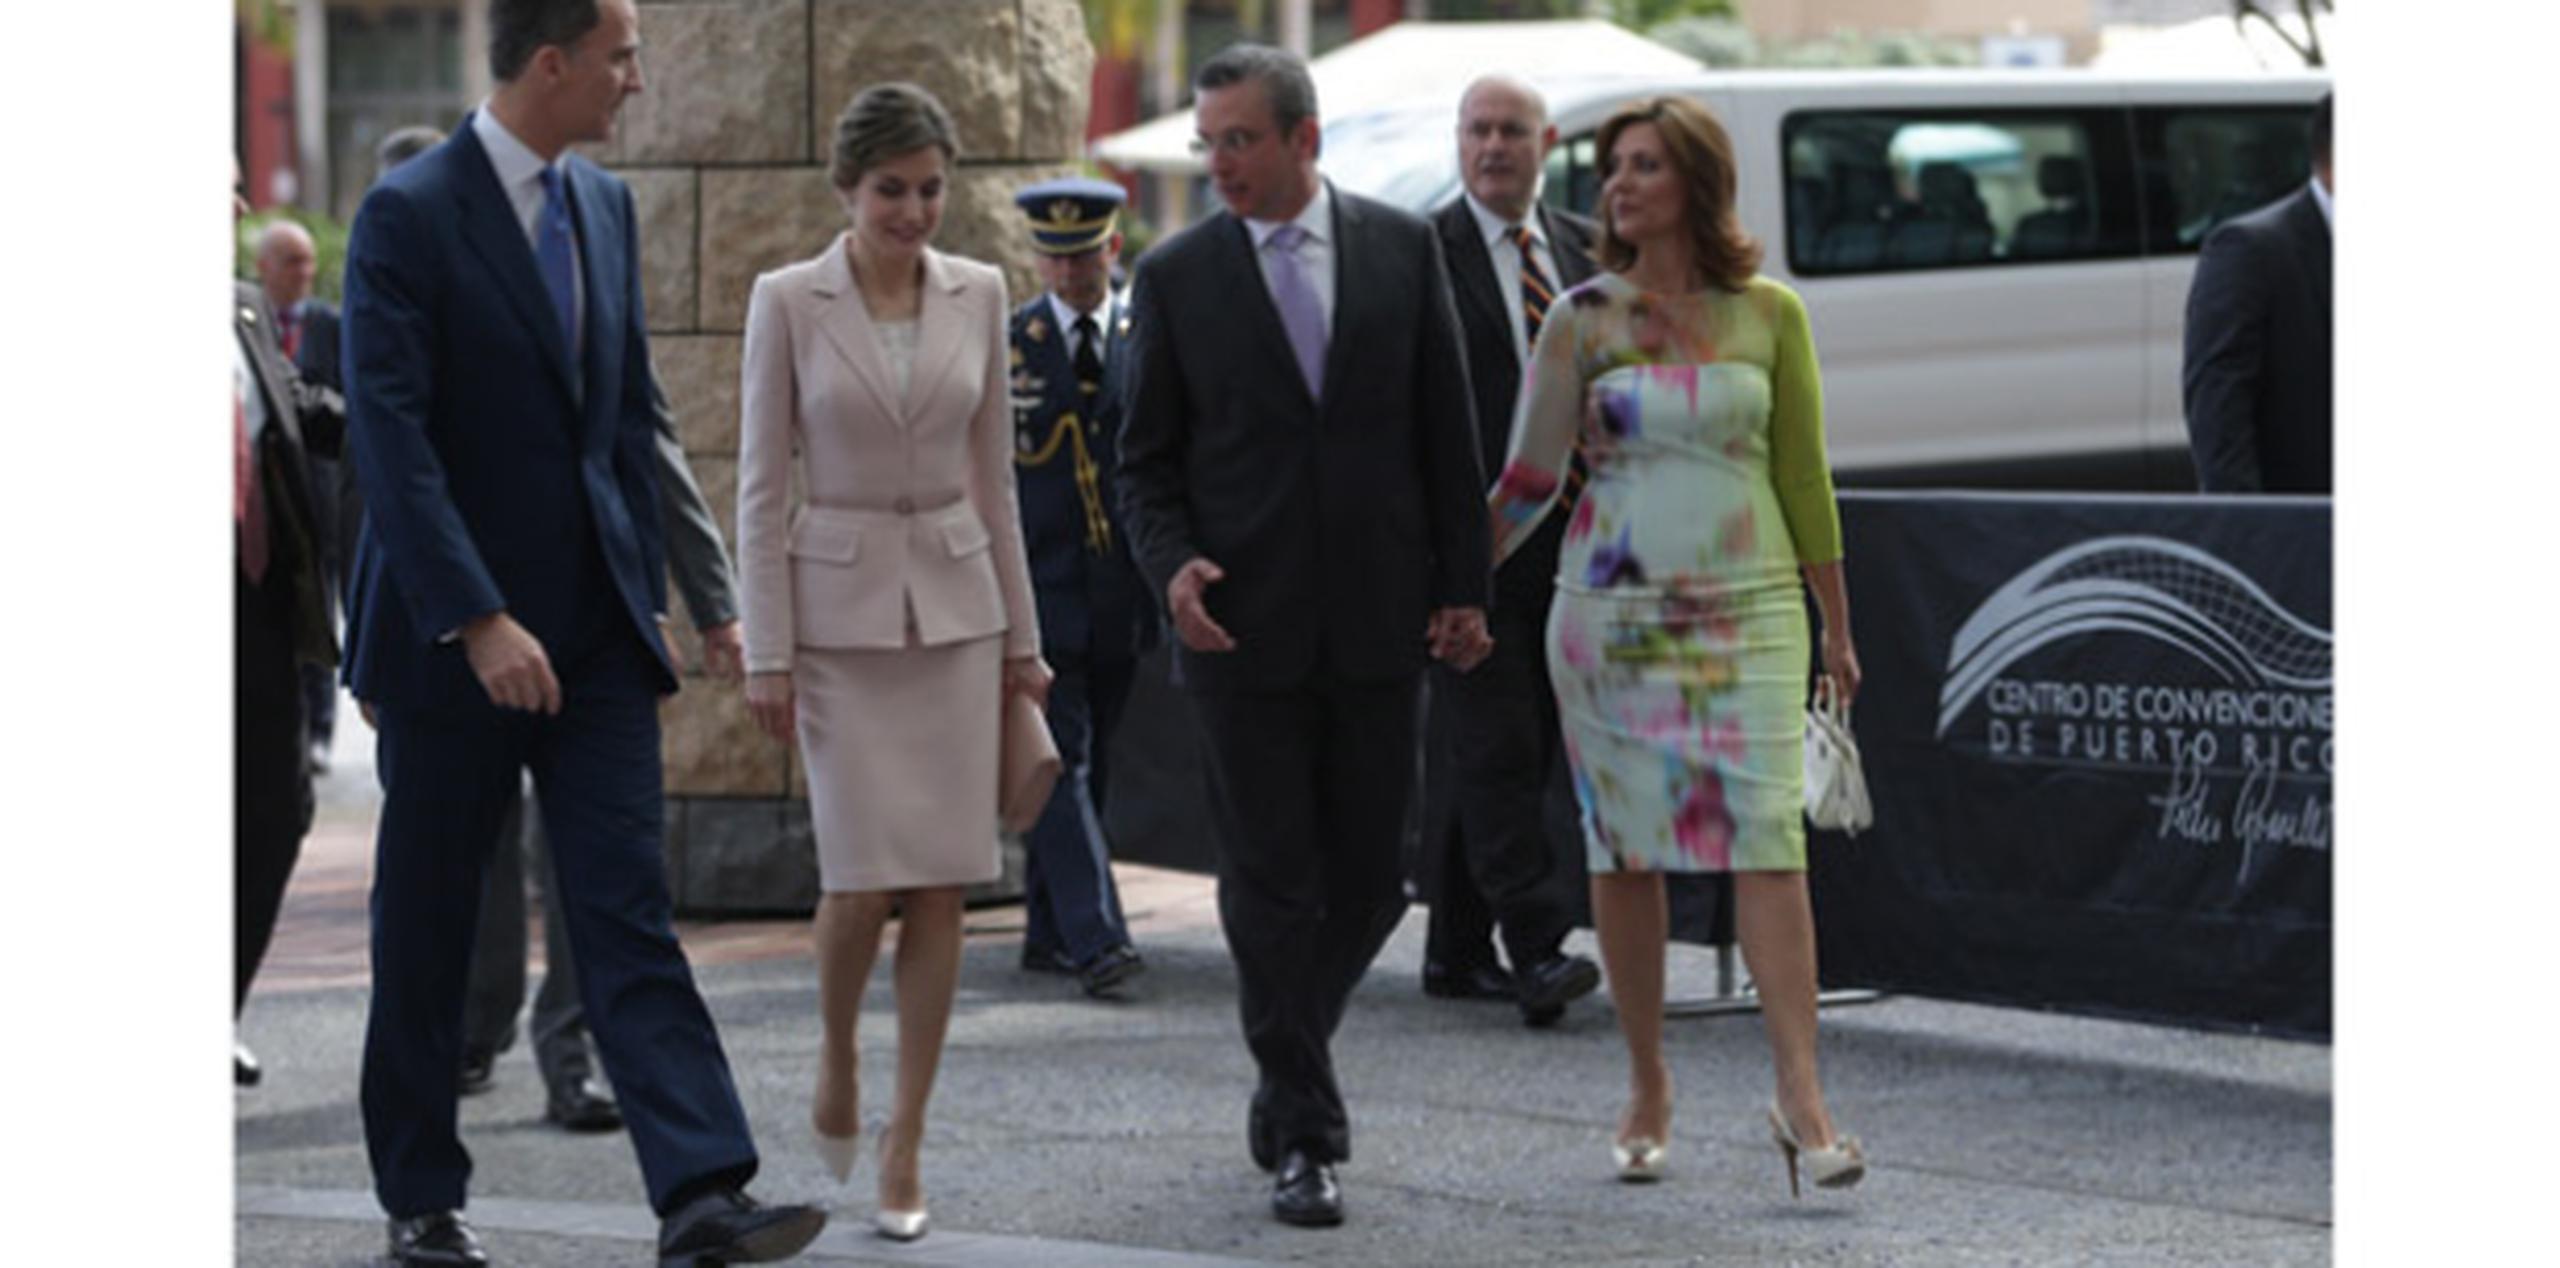 El gobernador Alejandro García Padilla y la Primera Dama le dieron la bienvenida a la familia real en el Centro de Convenciones de Puerto Rico.